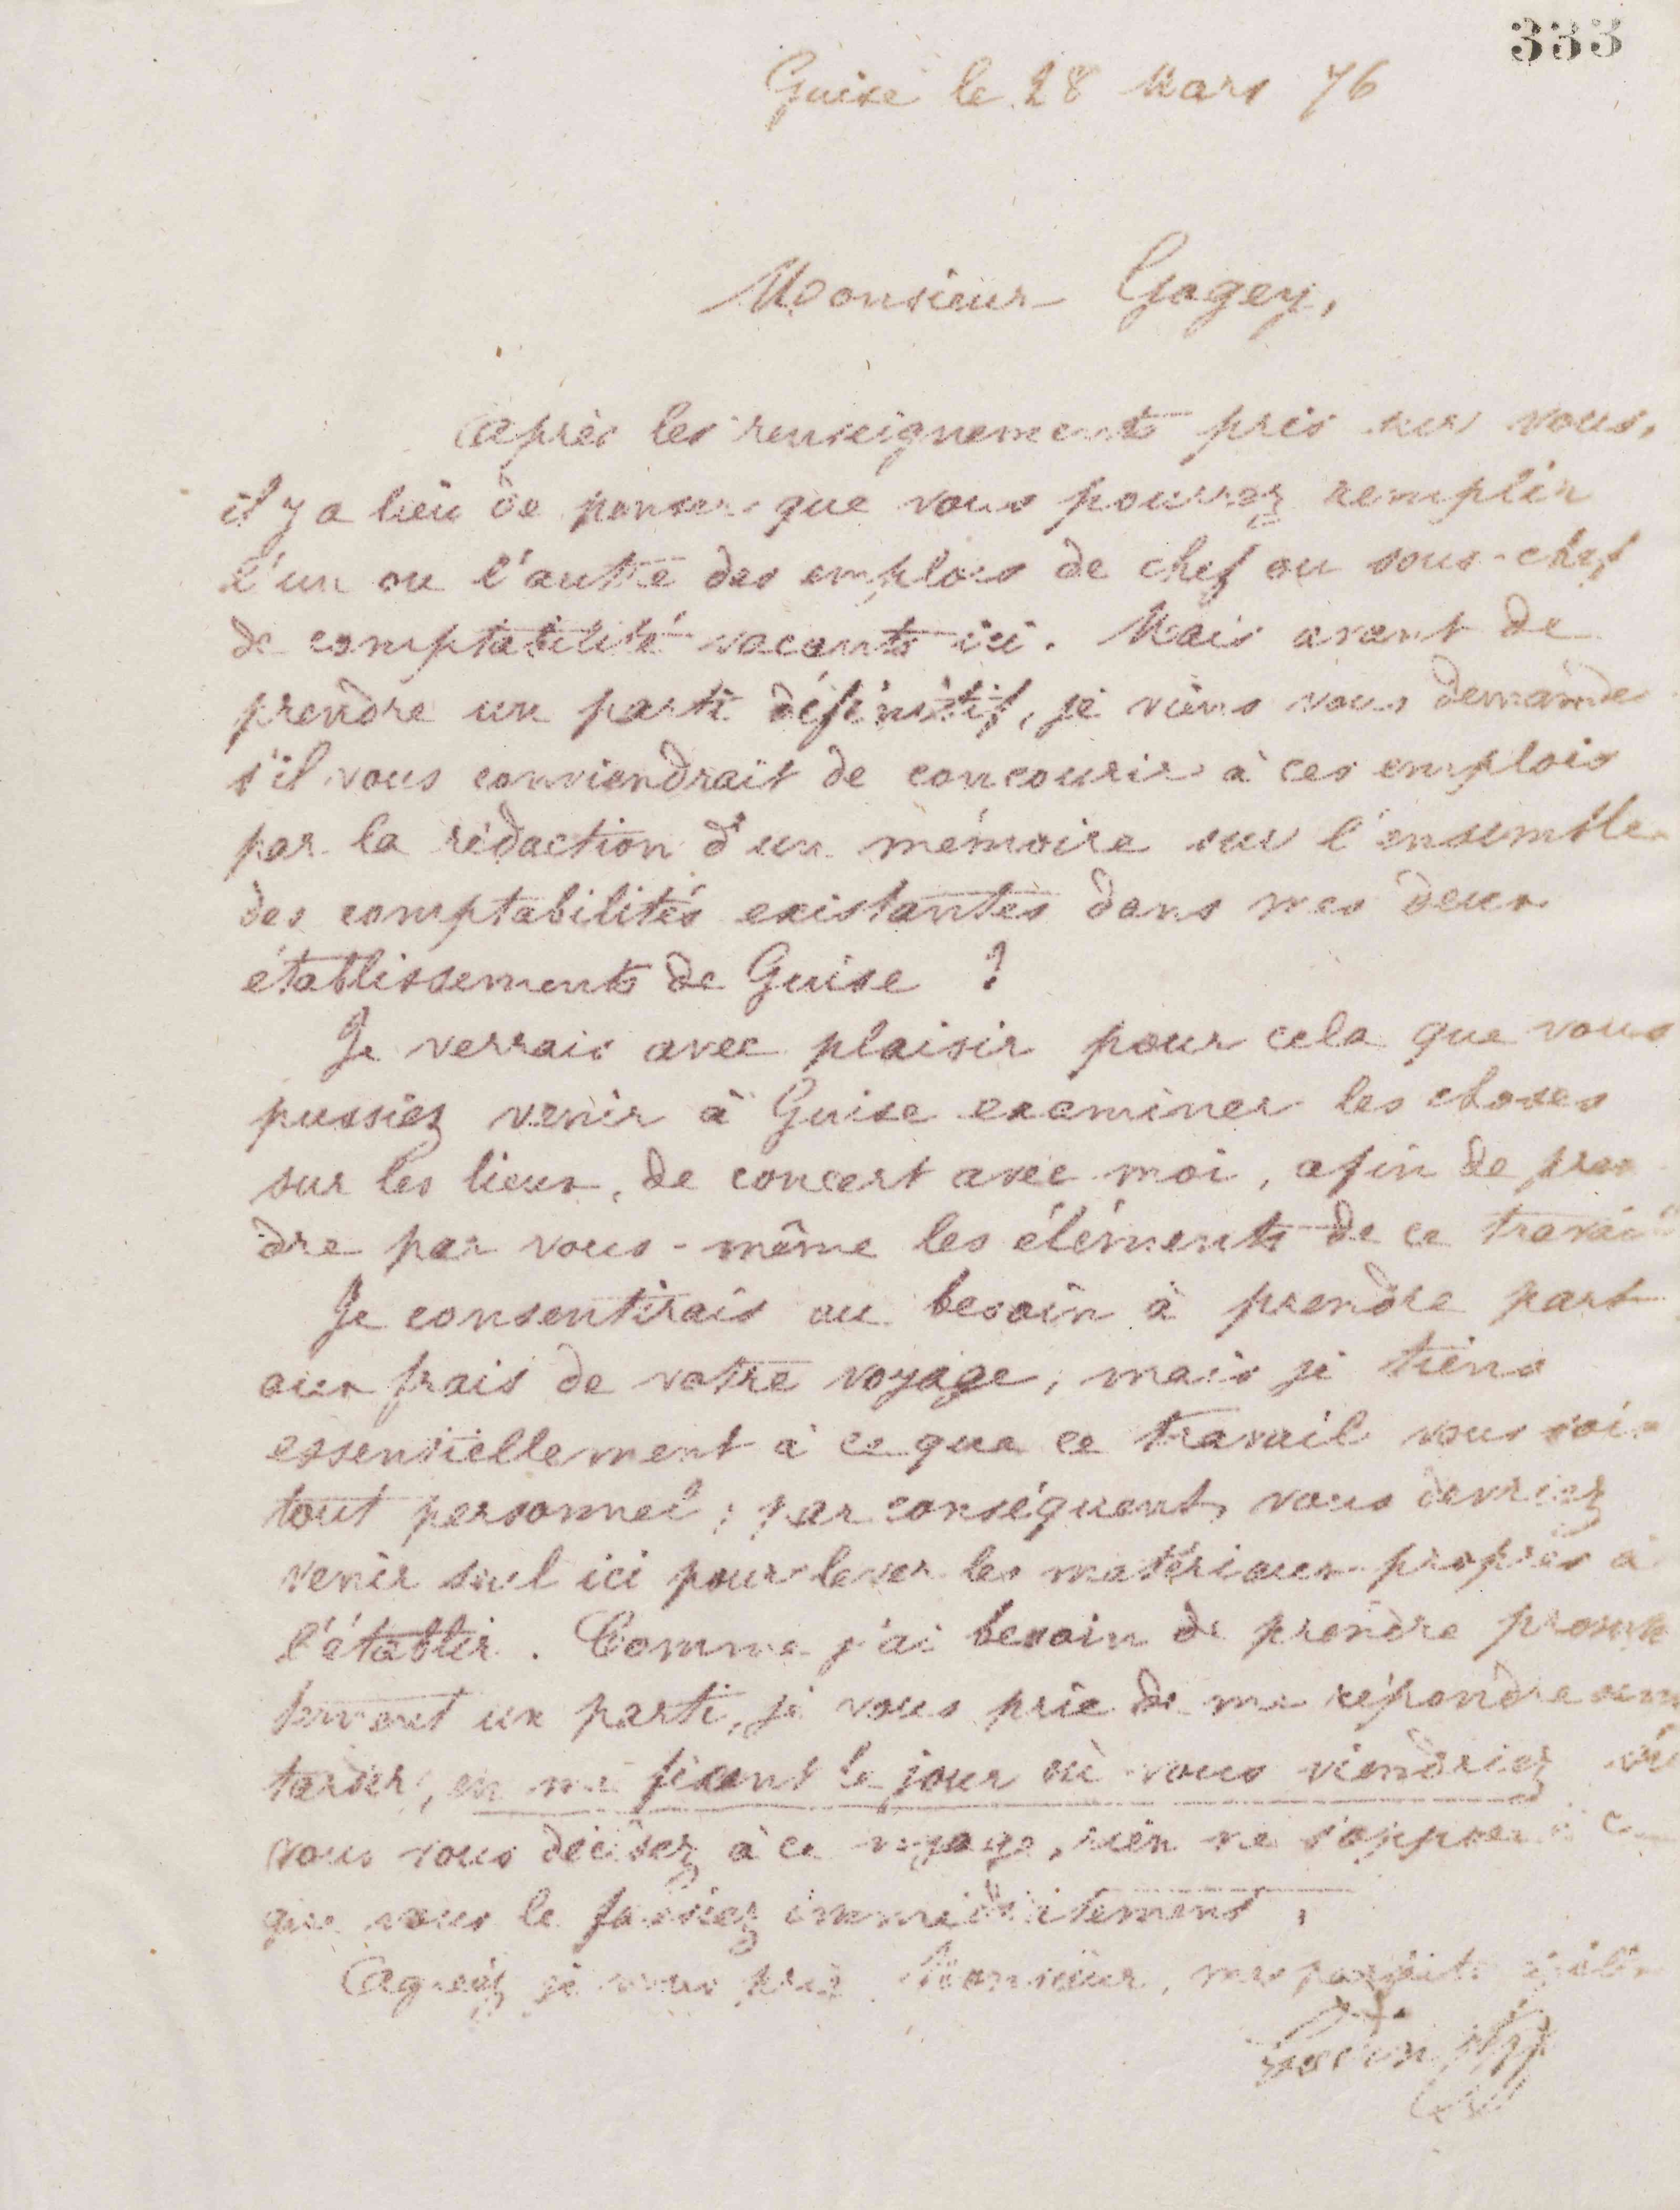 Jean-Baptiste André Godin à monsieur Gogey, 28 mars 1876